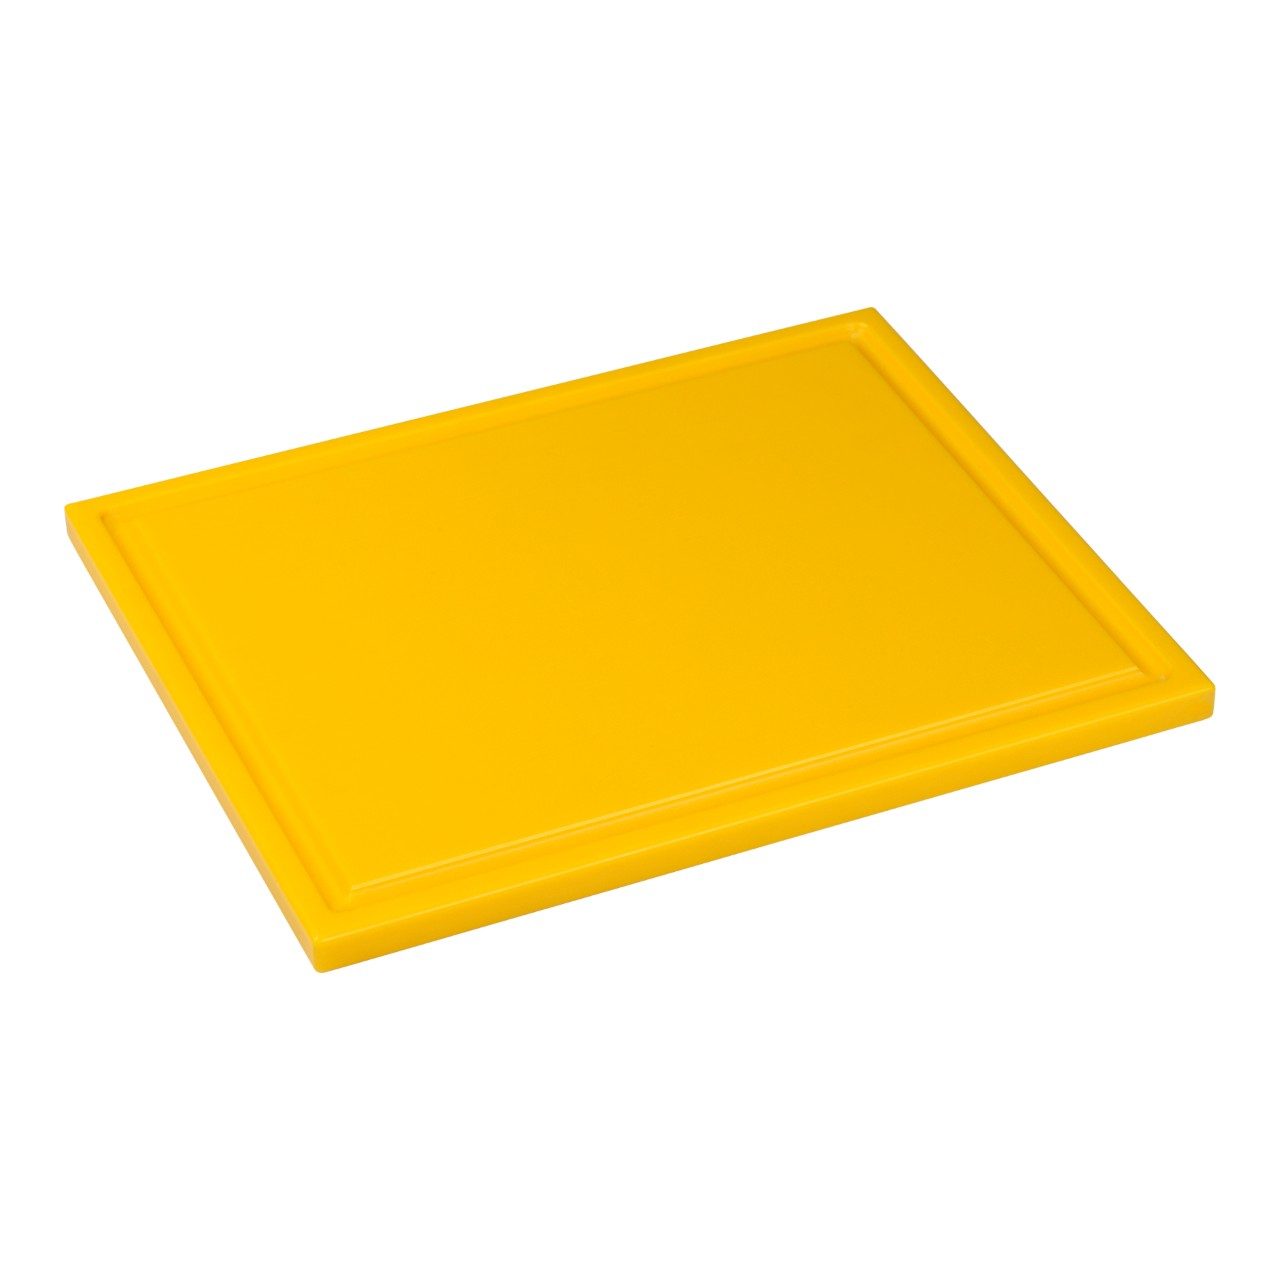 Snijplank met sapgeul, 1/2 GN geel, 325 x 265 x 15 mm